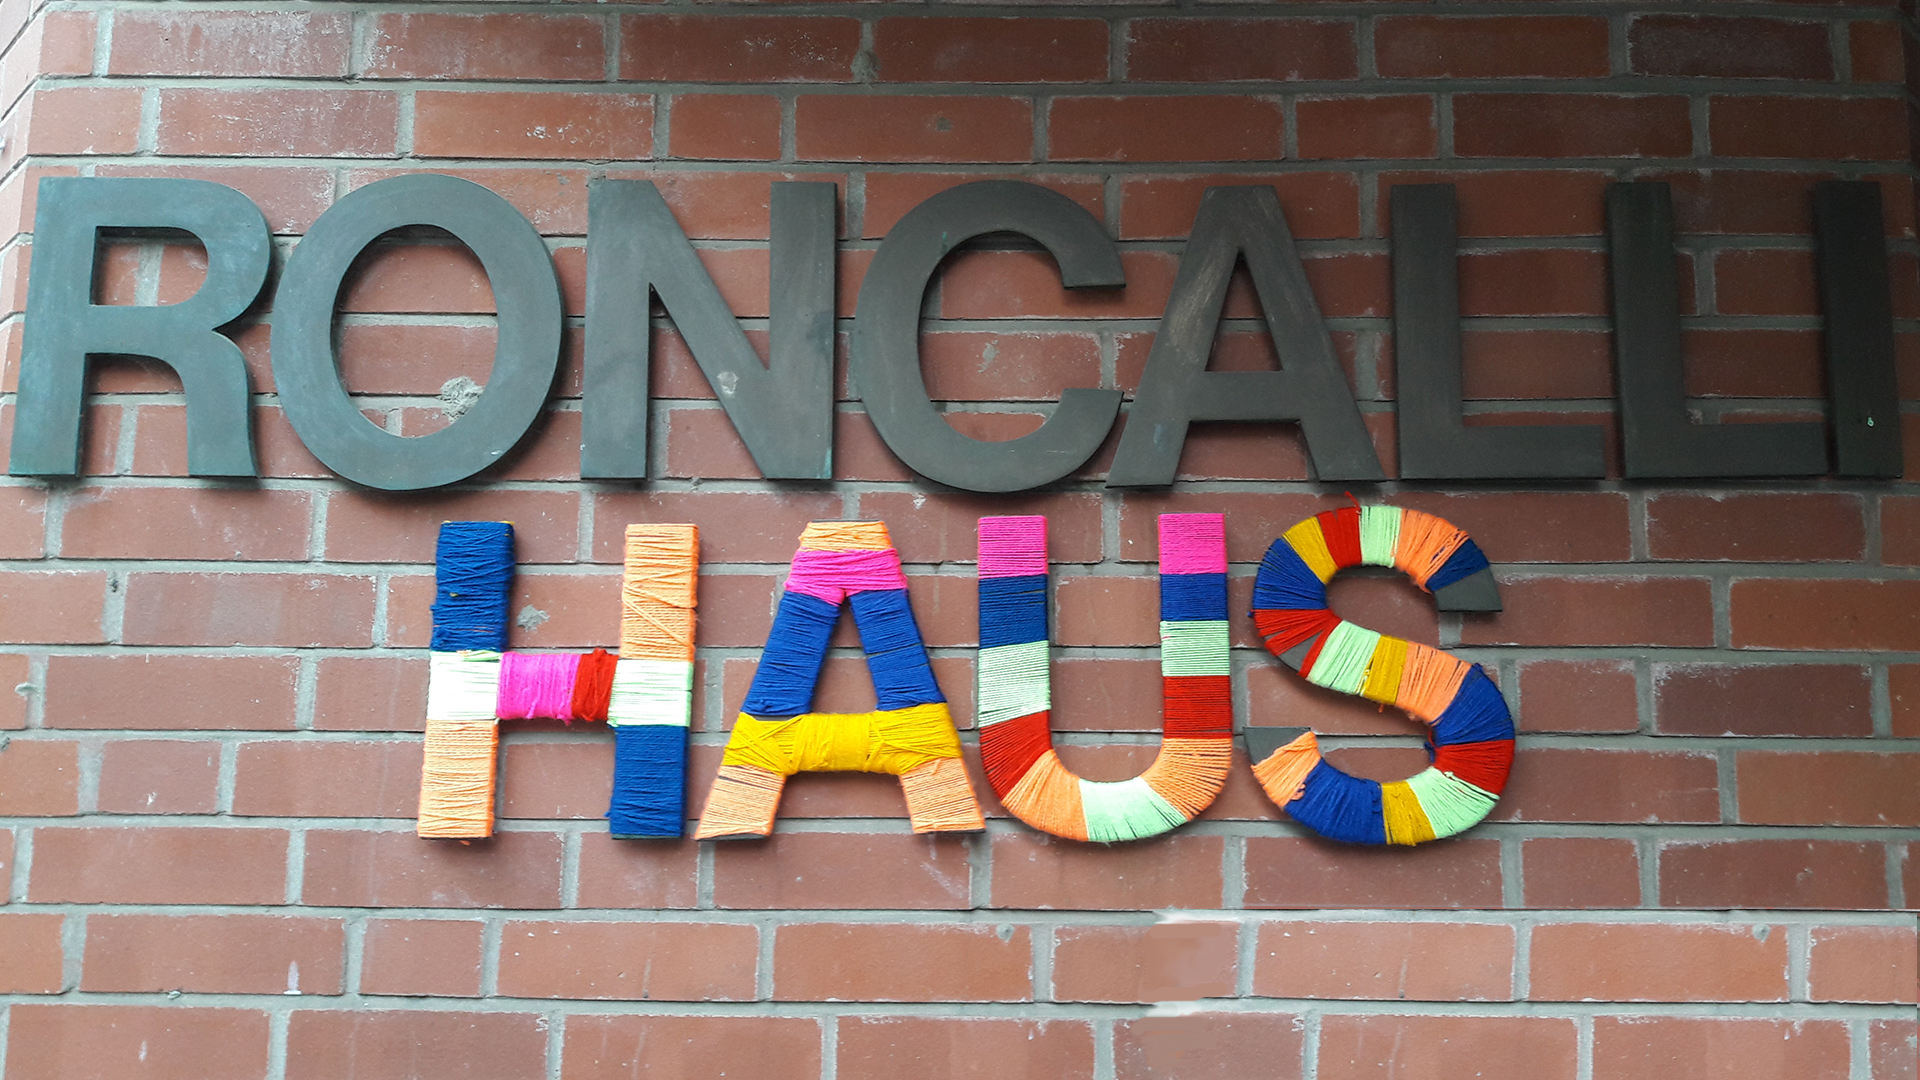 An einer Wand hängen Buchstaben, die die Wörter "Roncalli Haus" bilden.